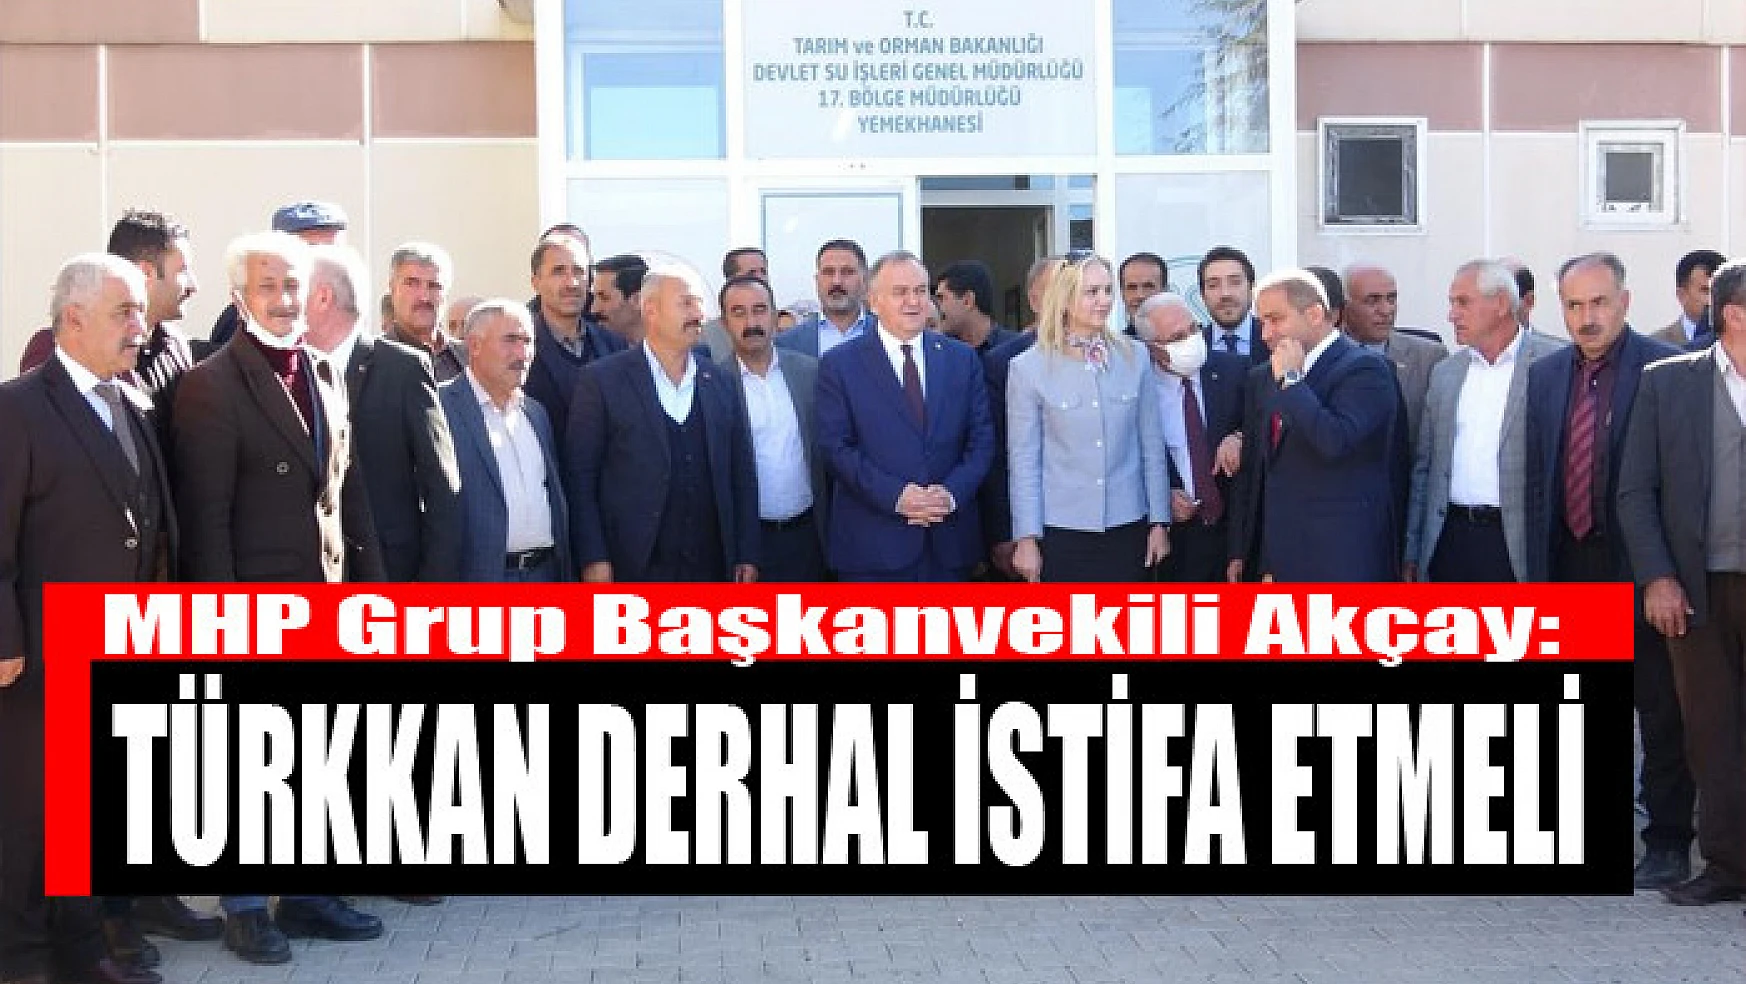 MHP Grup Başkanvekili Akçay: Türkkan derhal istifa etmeli